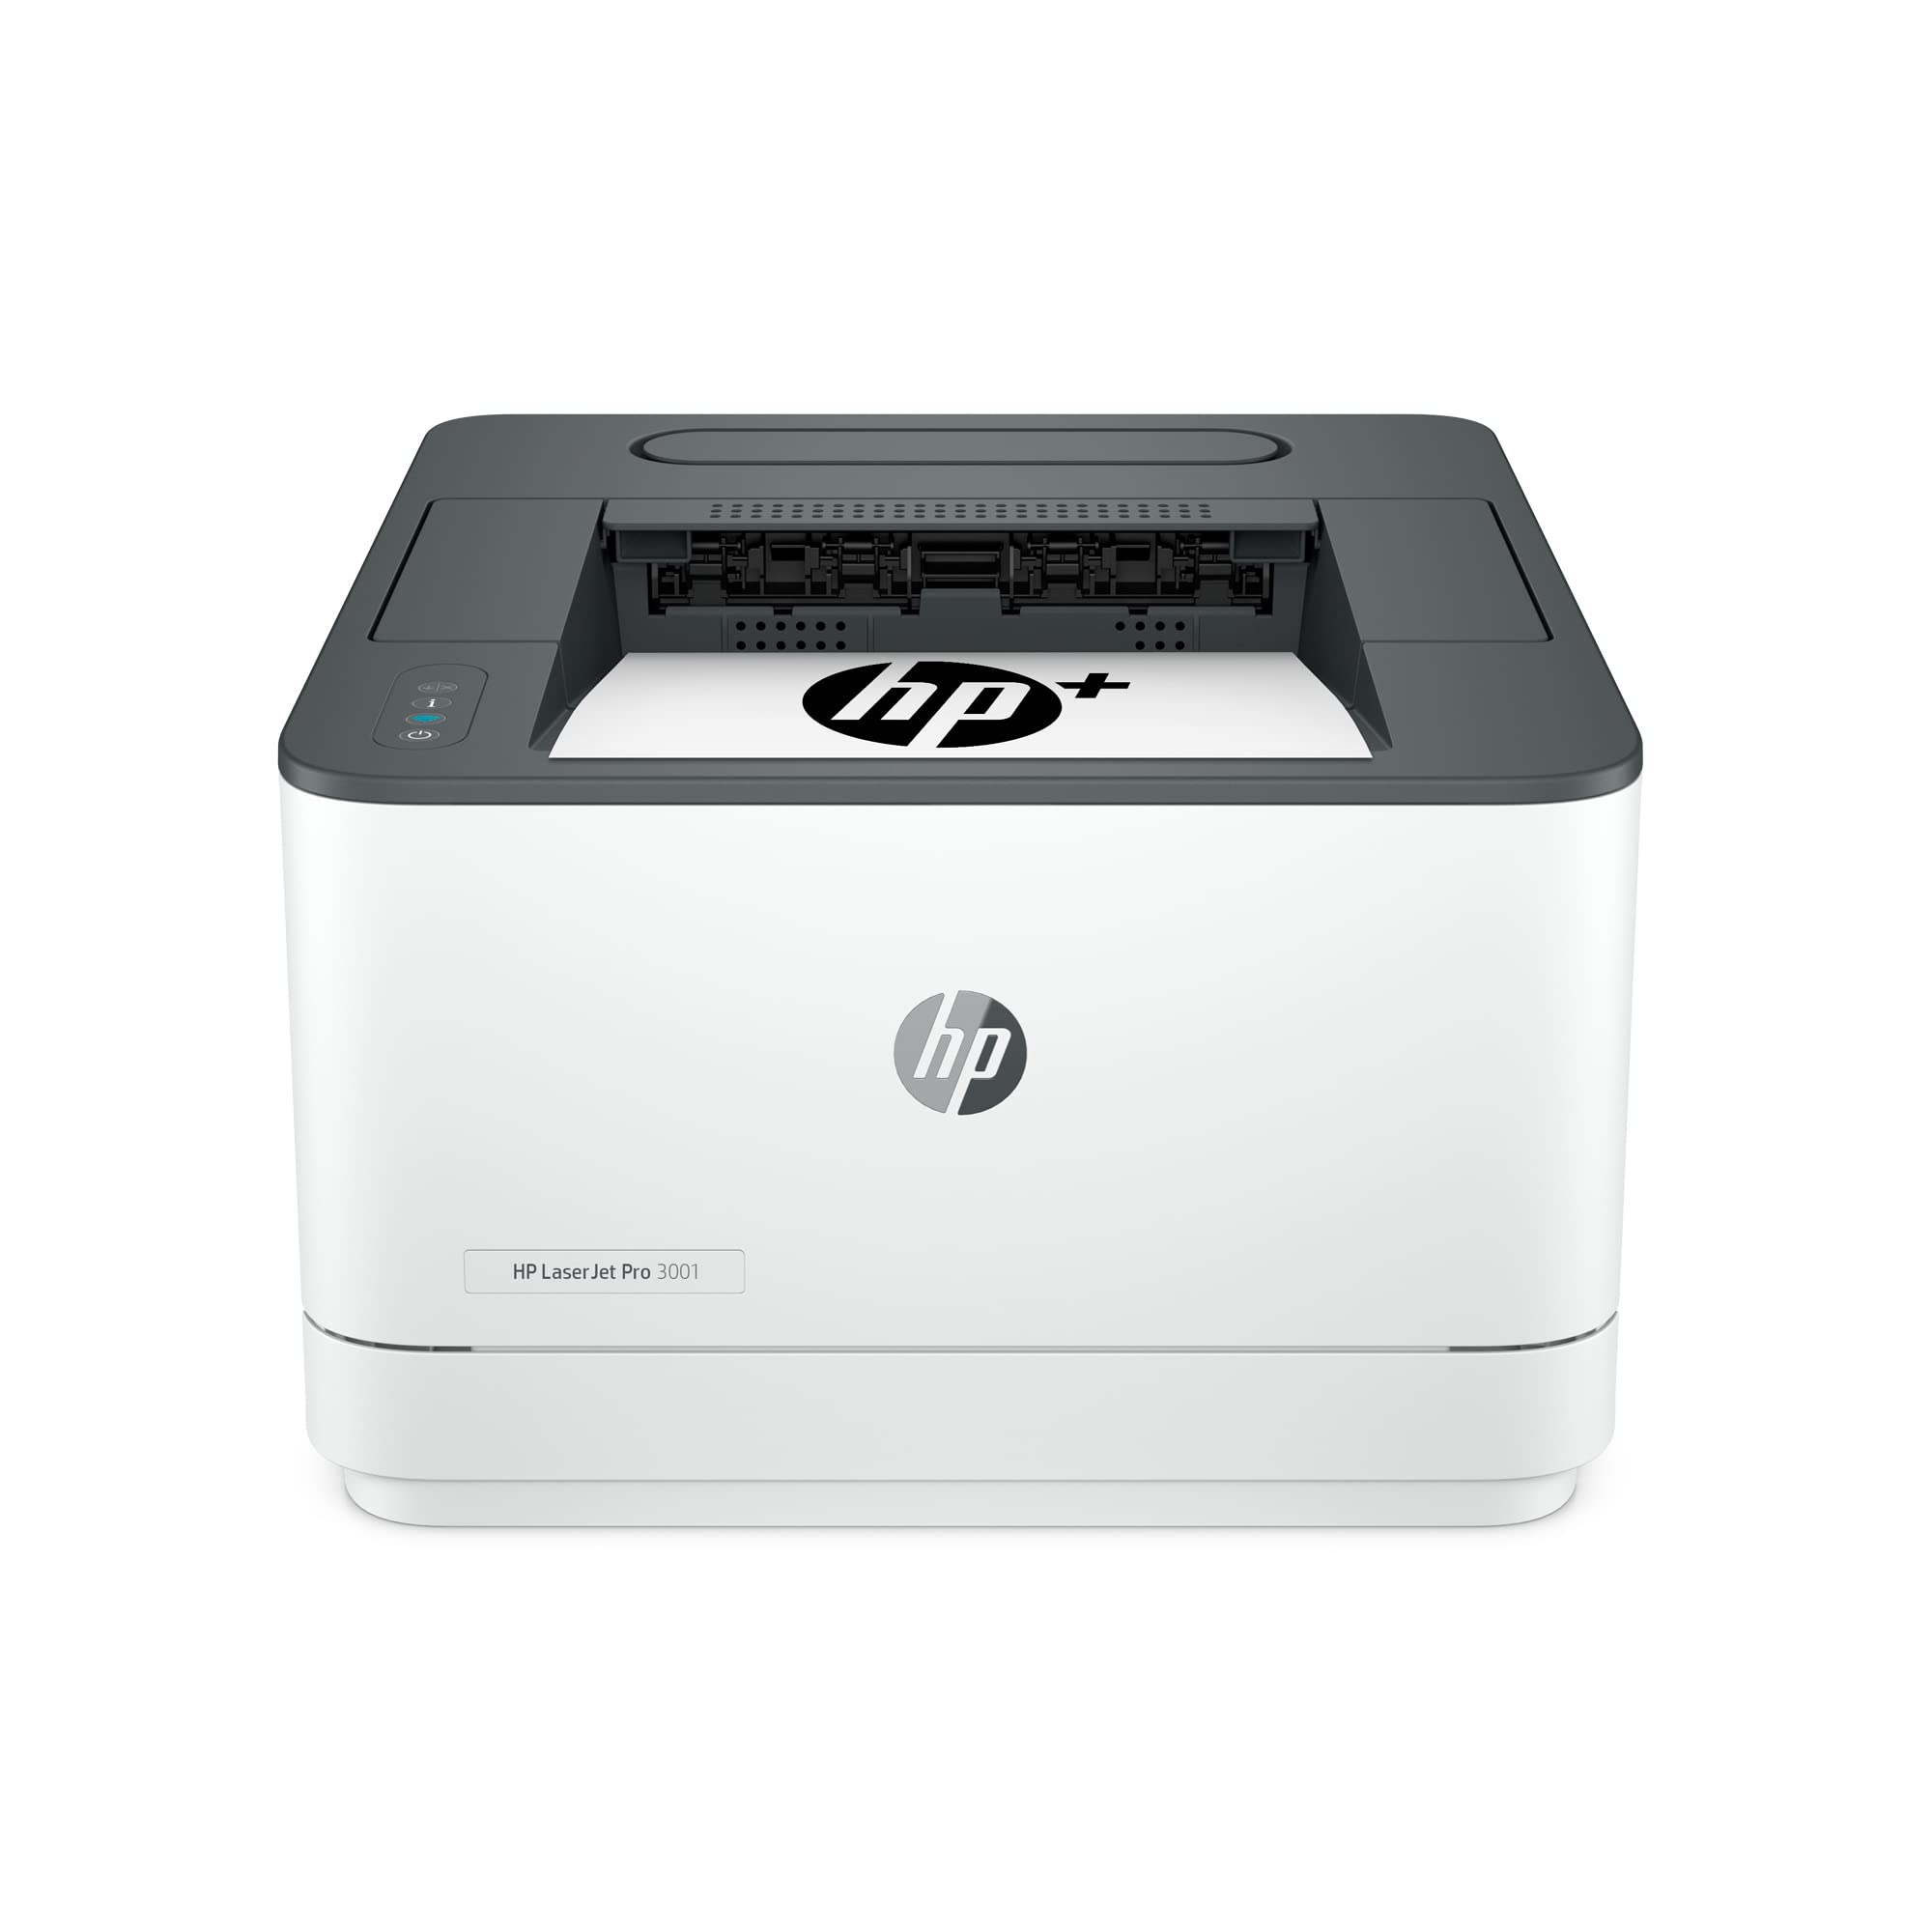 HP LaserJet Pro 3001dwe 无线黑白打印机 + 智能办公功能...